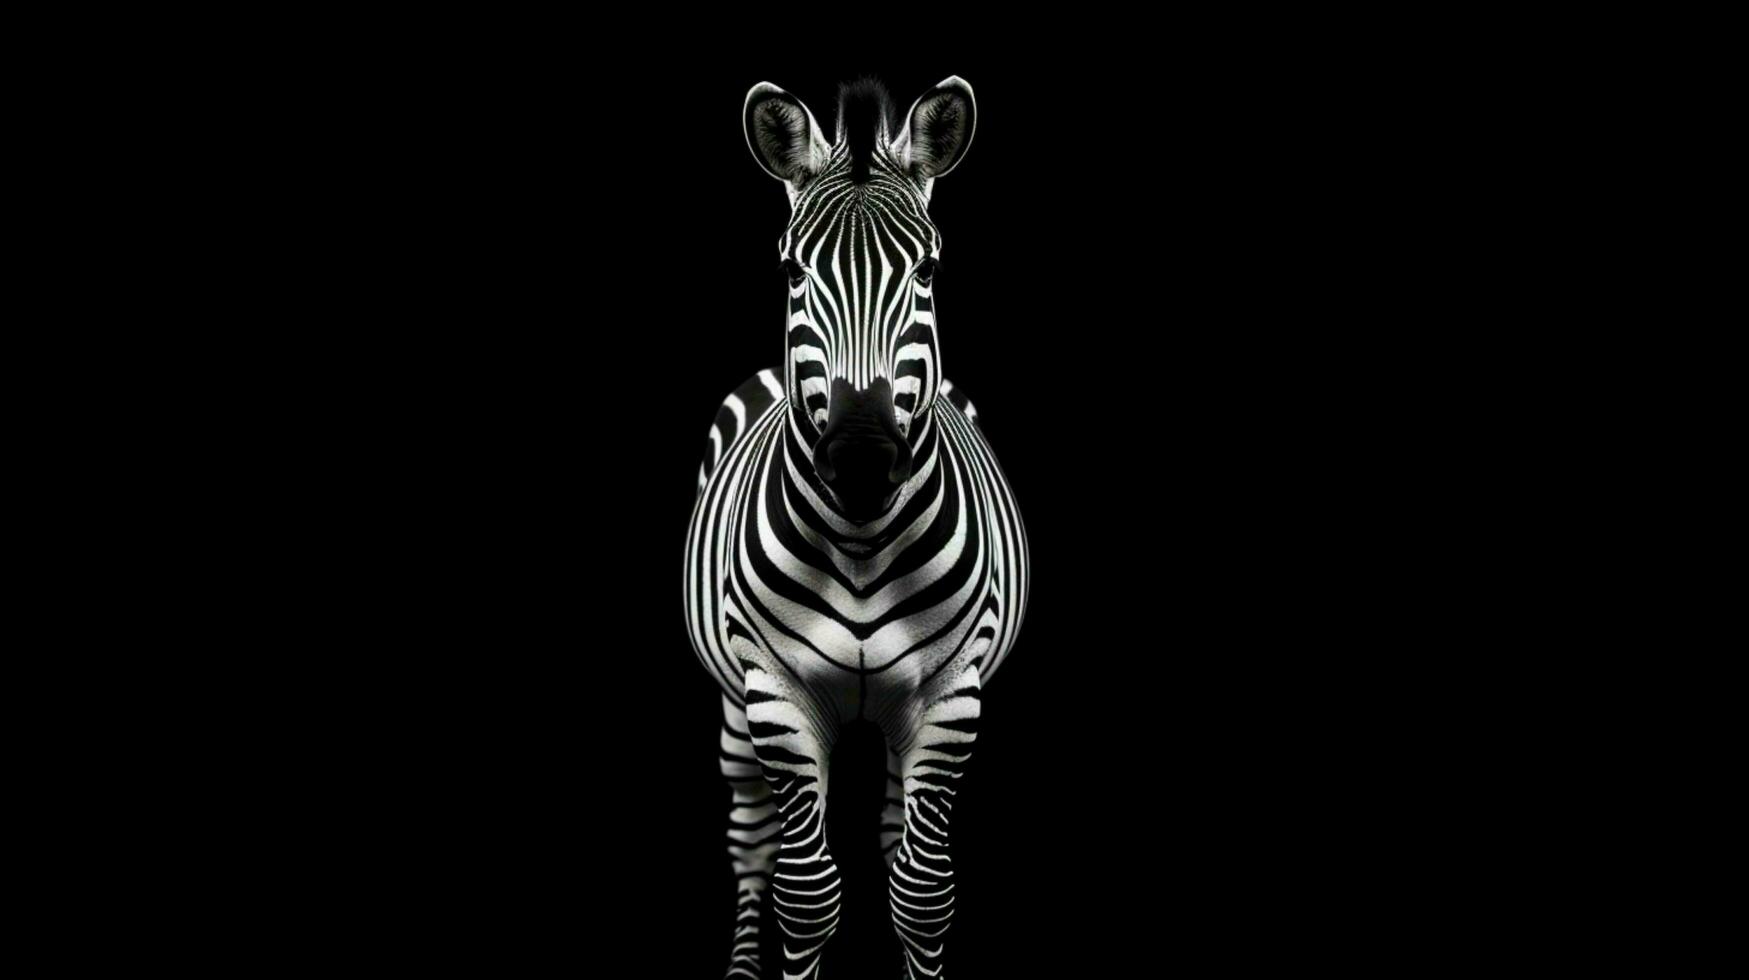 monocromatico a strisce zebra sta su nero sfondo foto